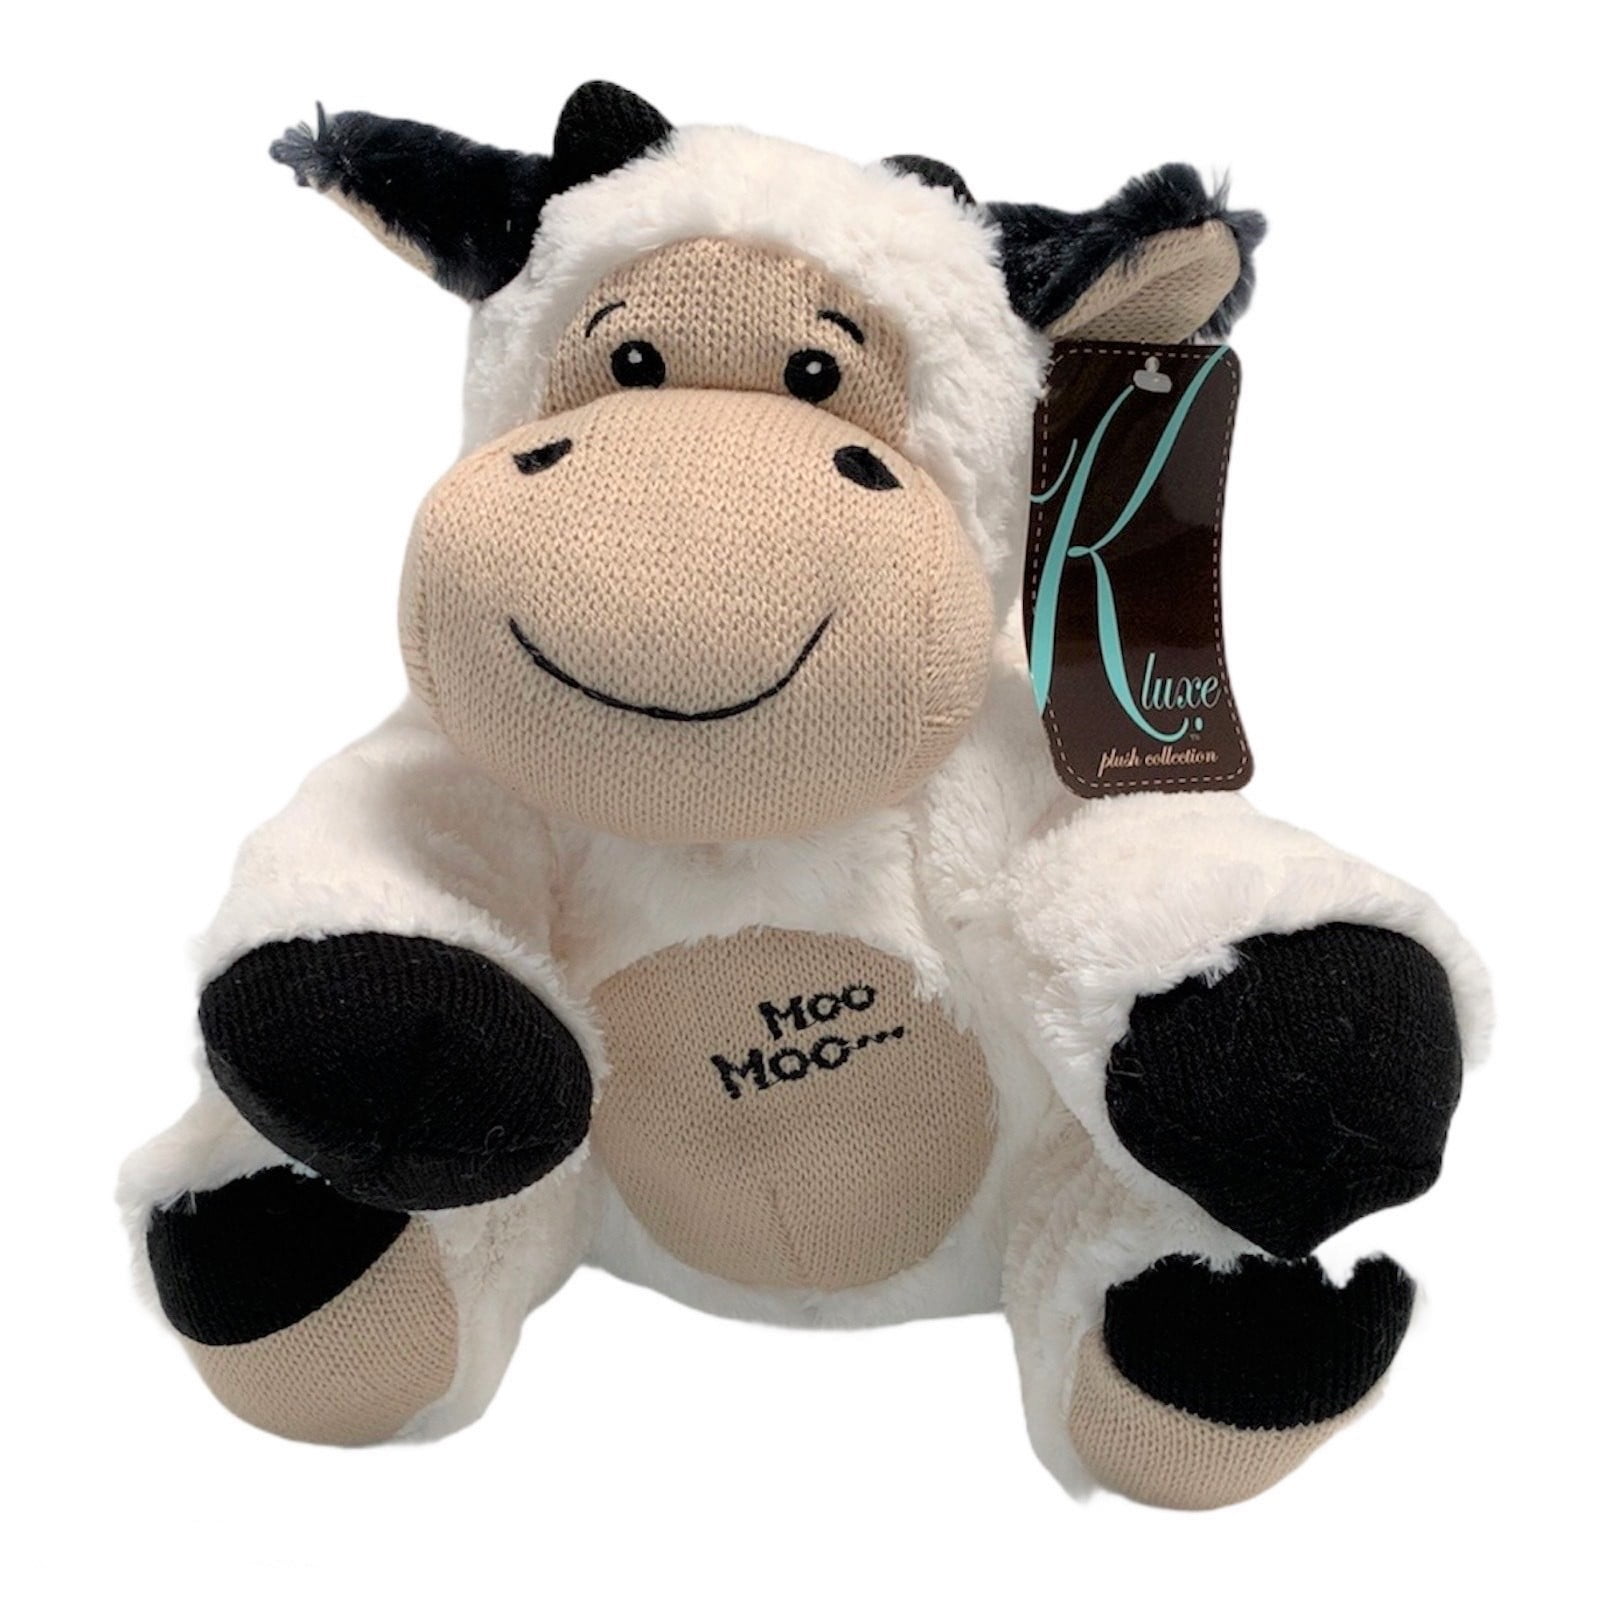 We stuff 'em...you love 'em! Cuddly Soft 16 inch Stuffed Bessie the Moo Cow 